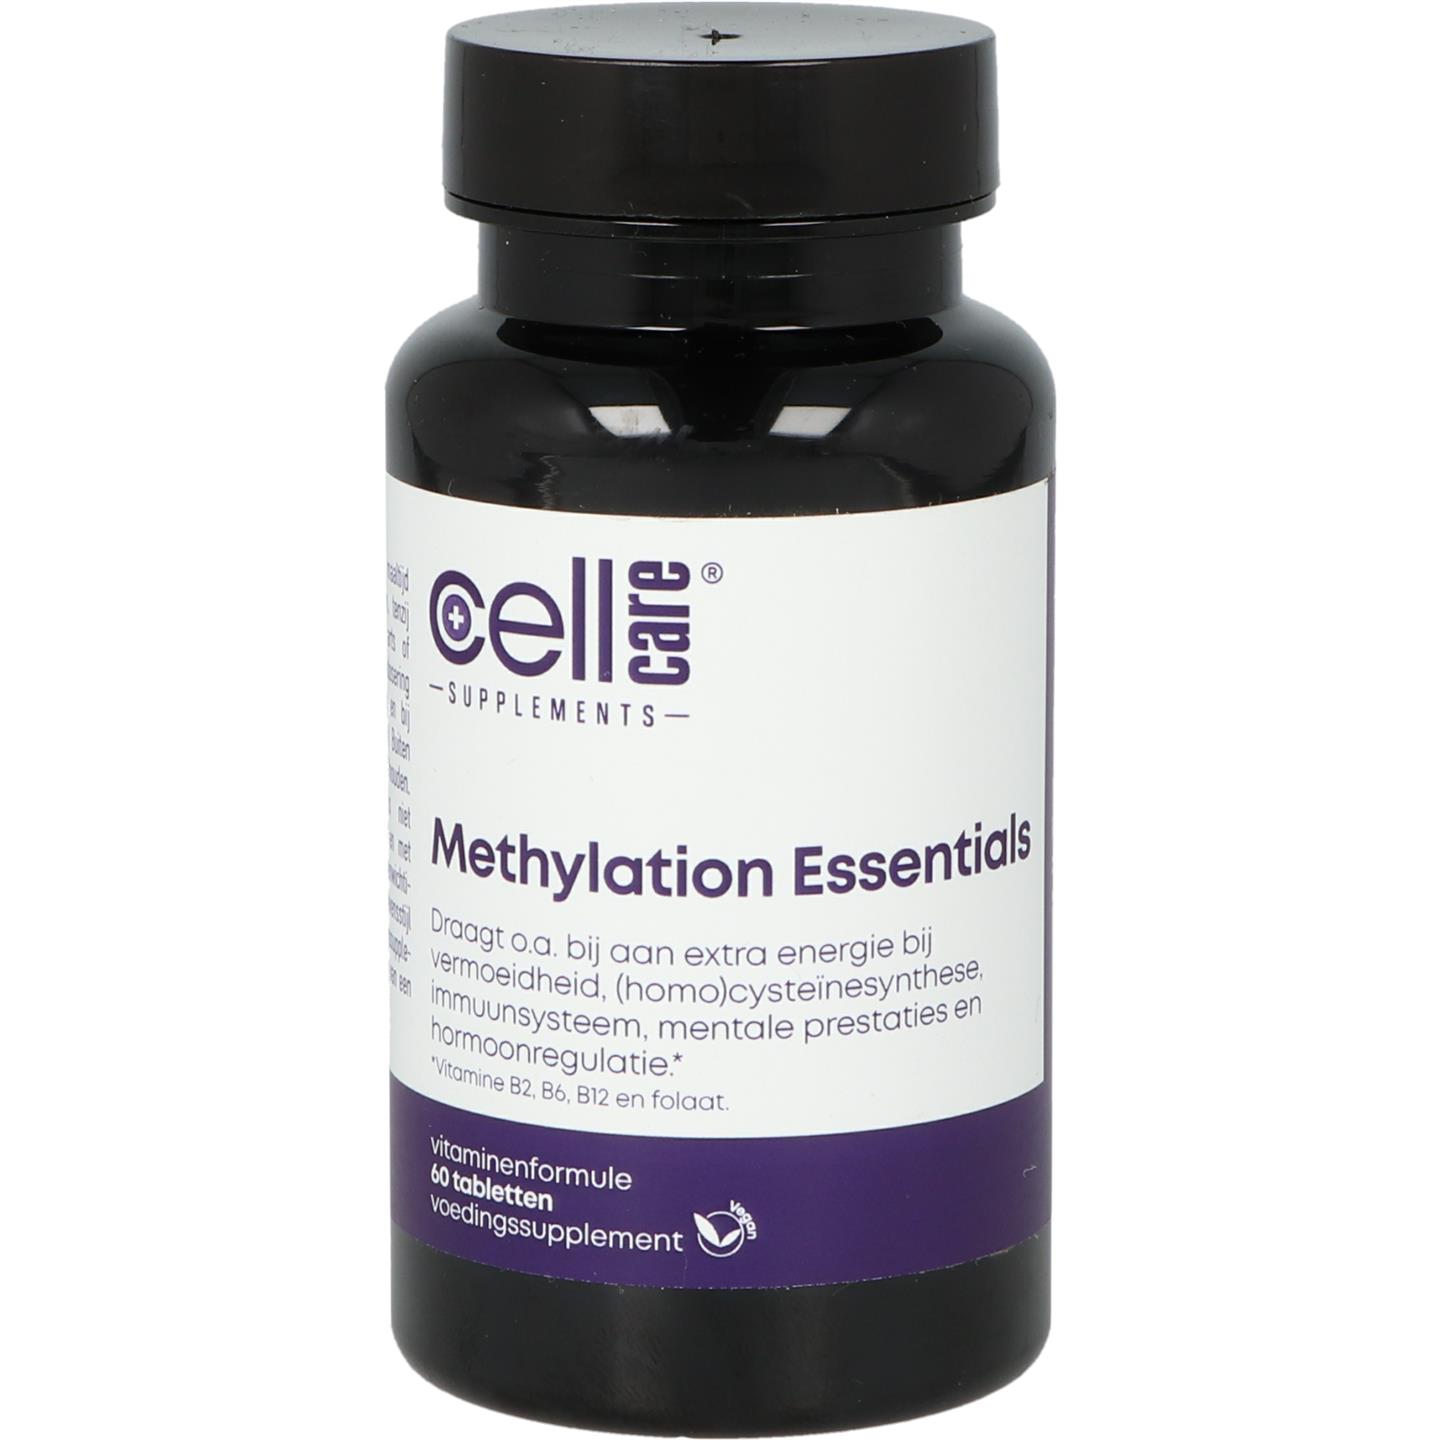 Methylation Essentials